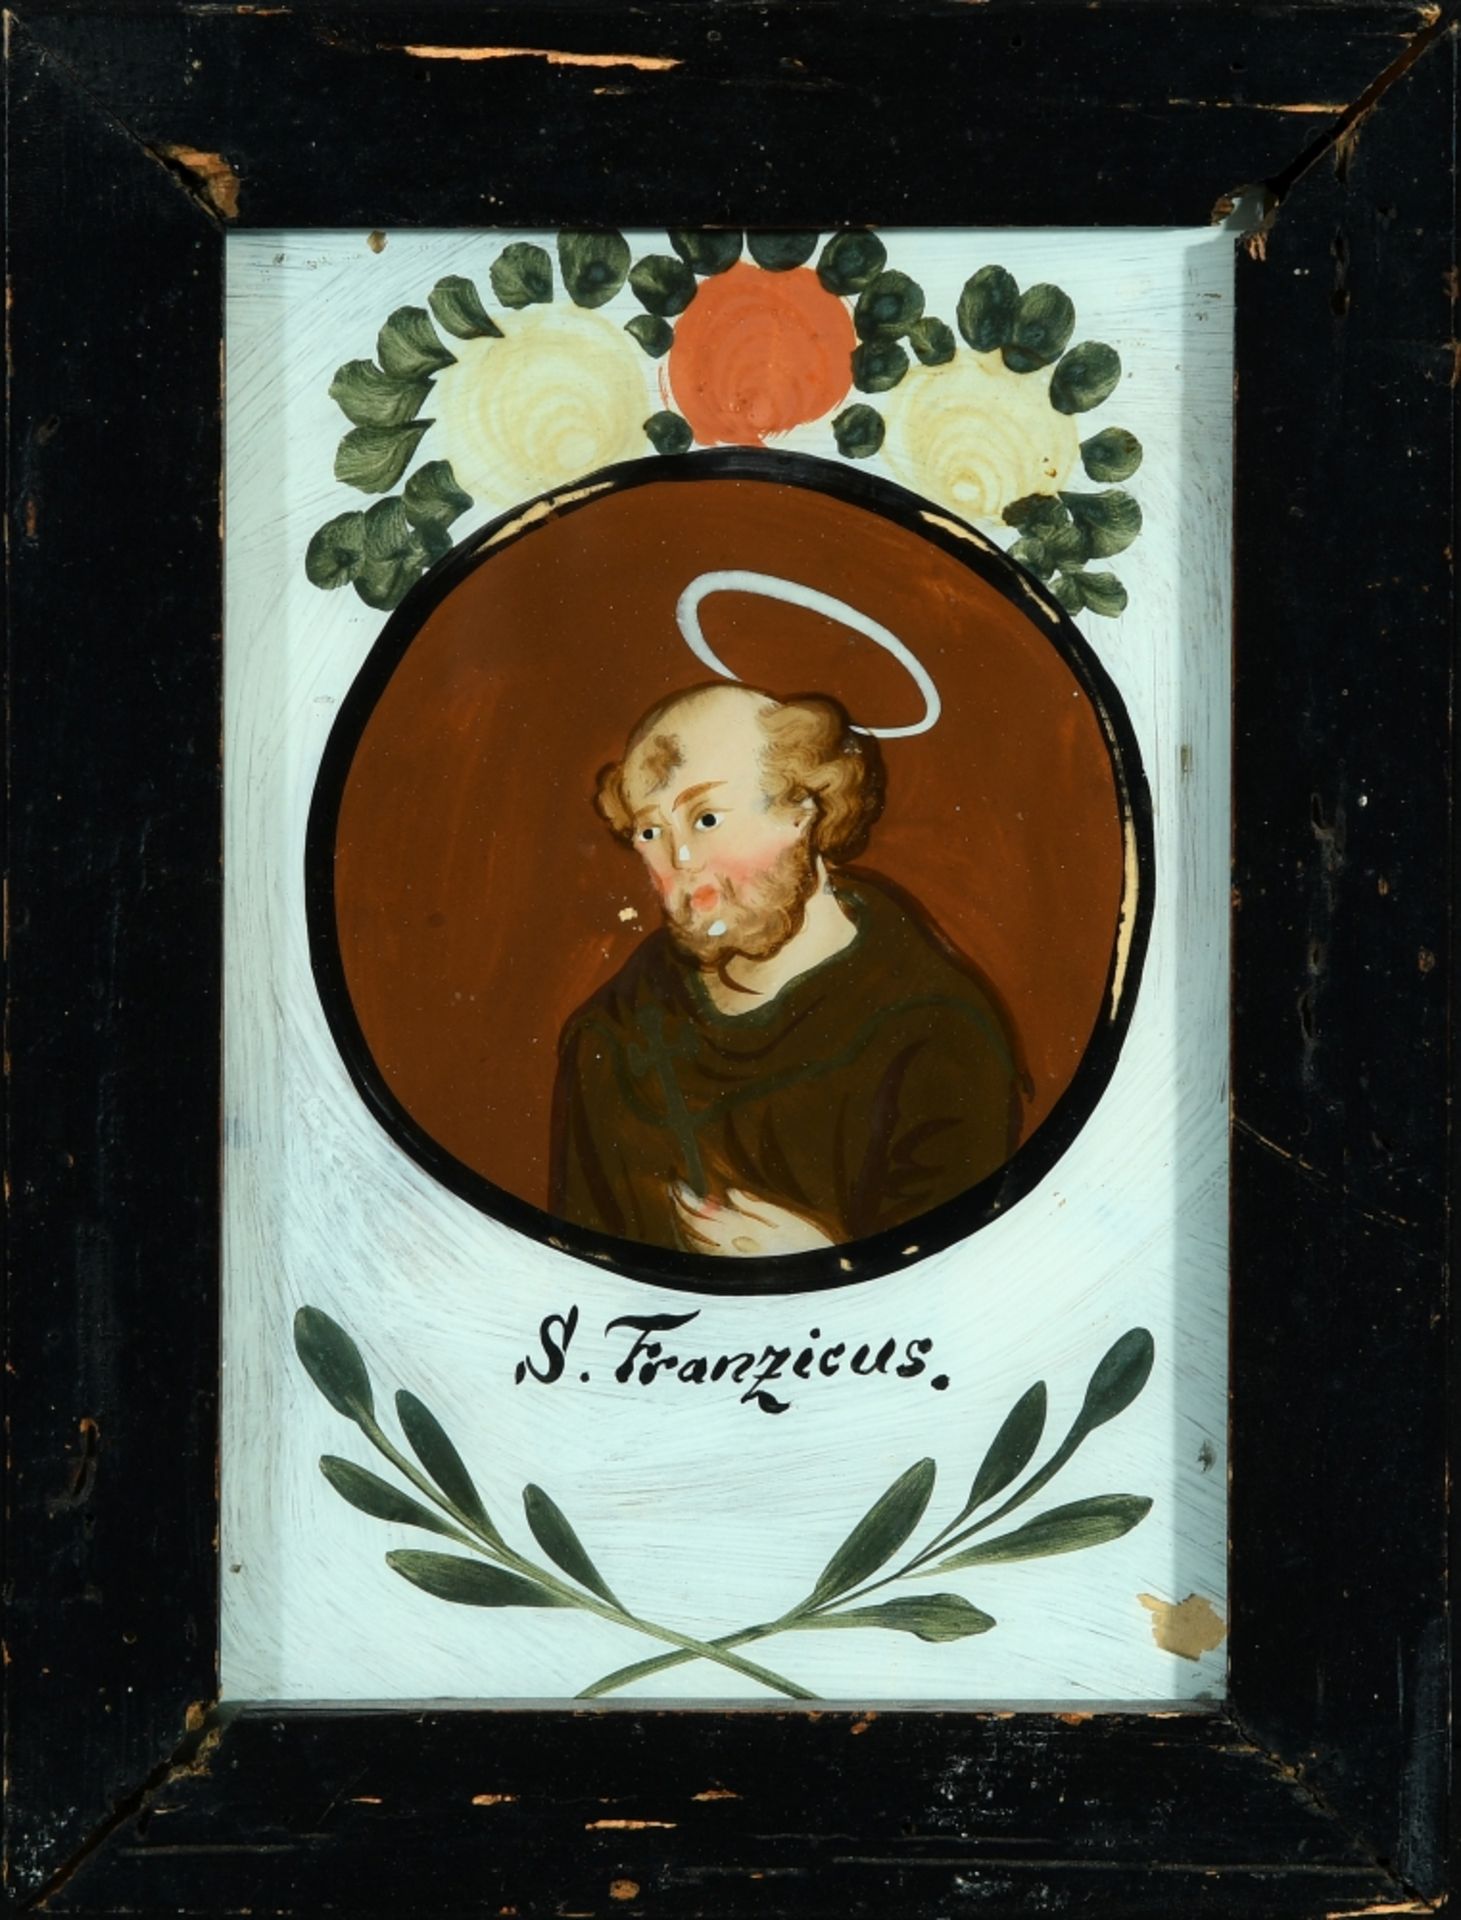 Hinterglasmalerei "S. Franzicus (Franziskus)"